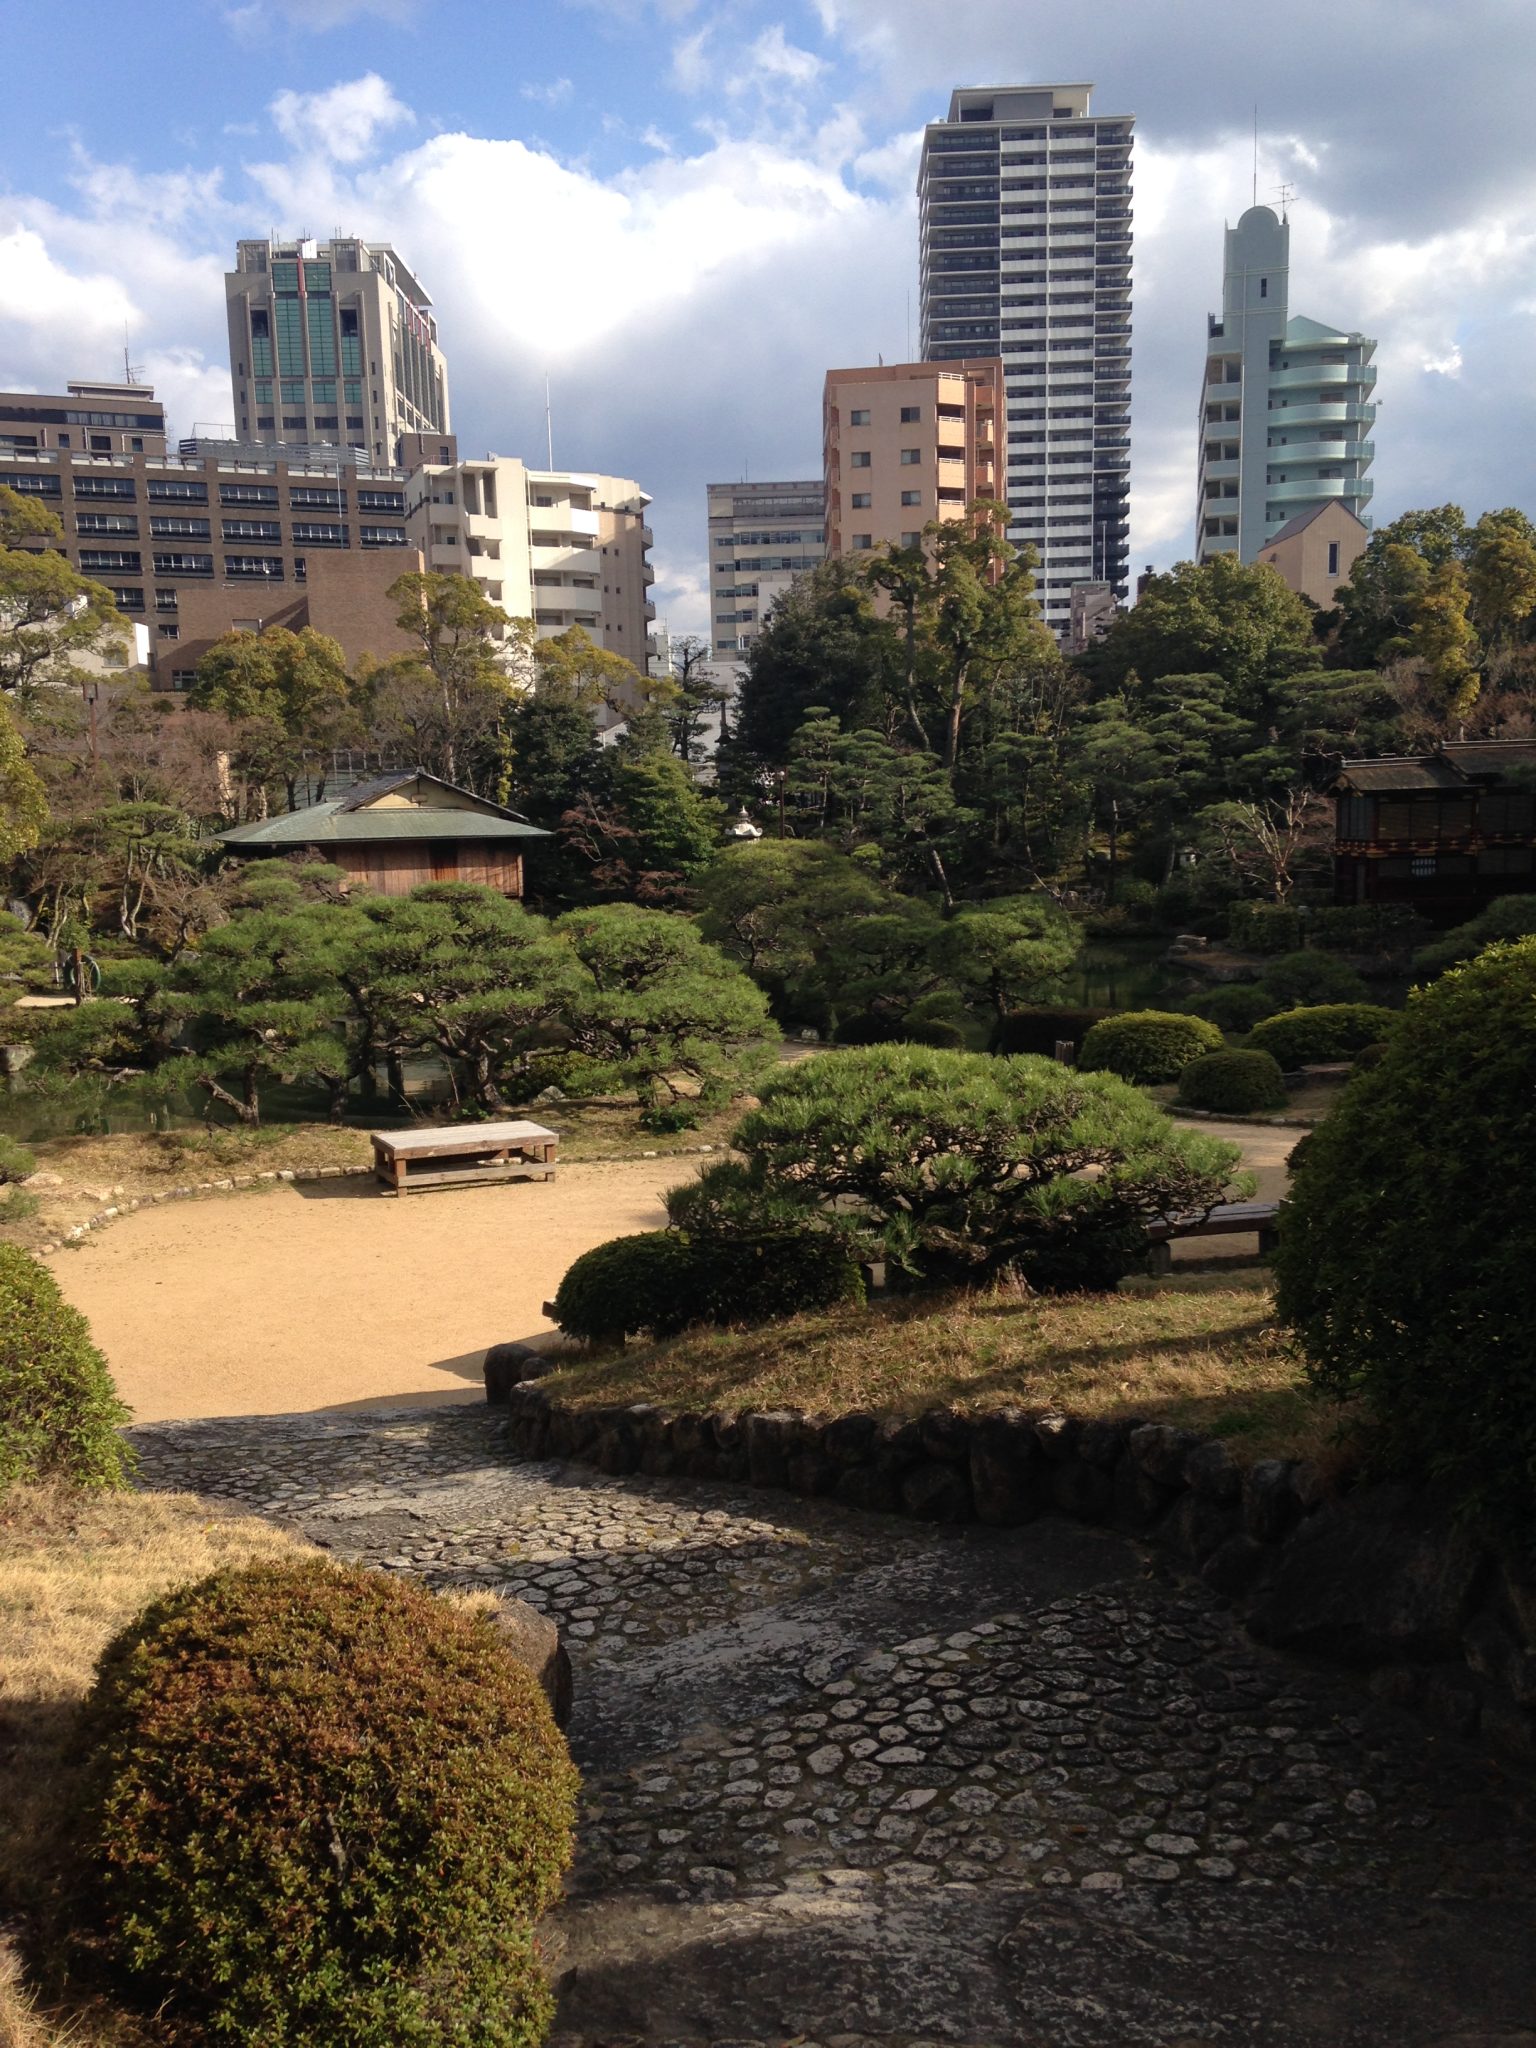 A city garden in Kobe, Japan